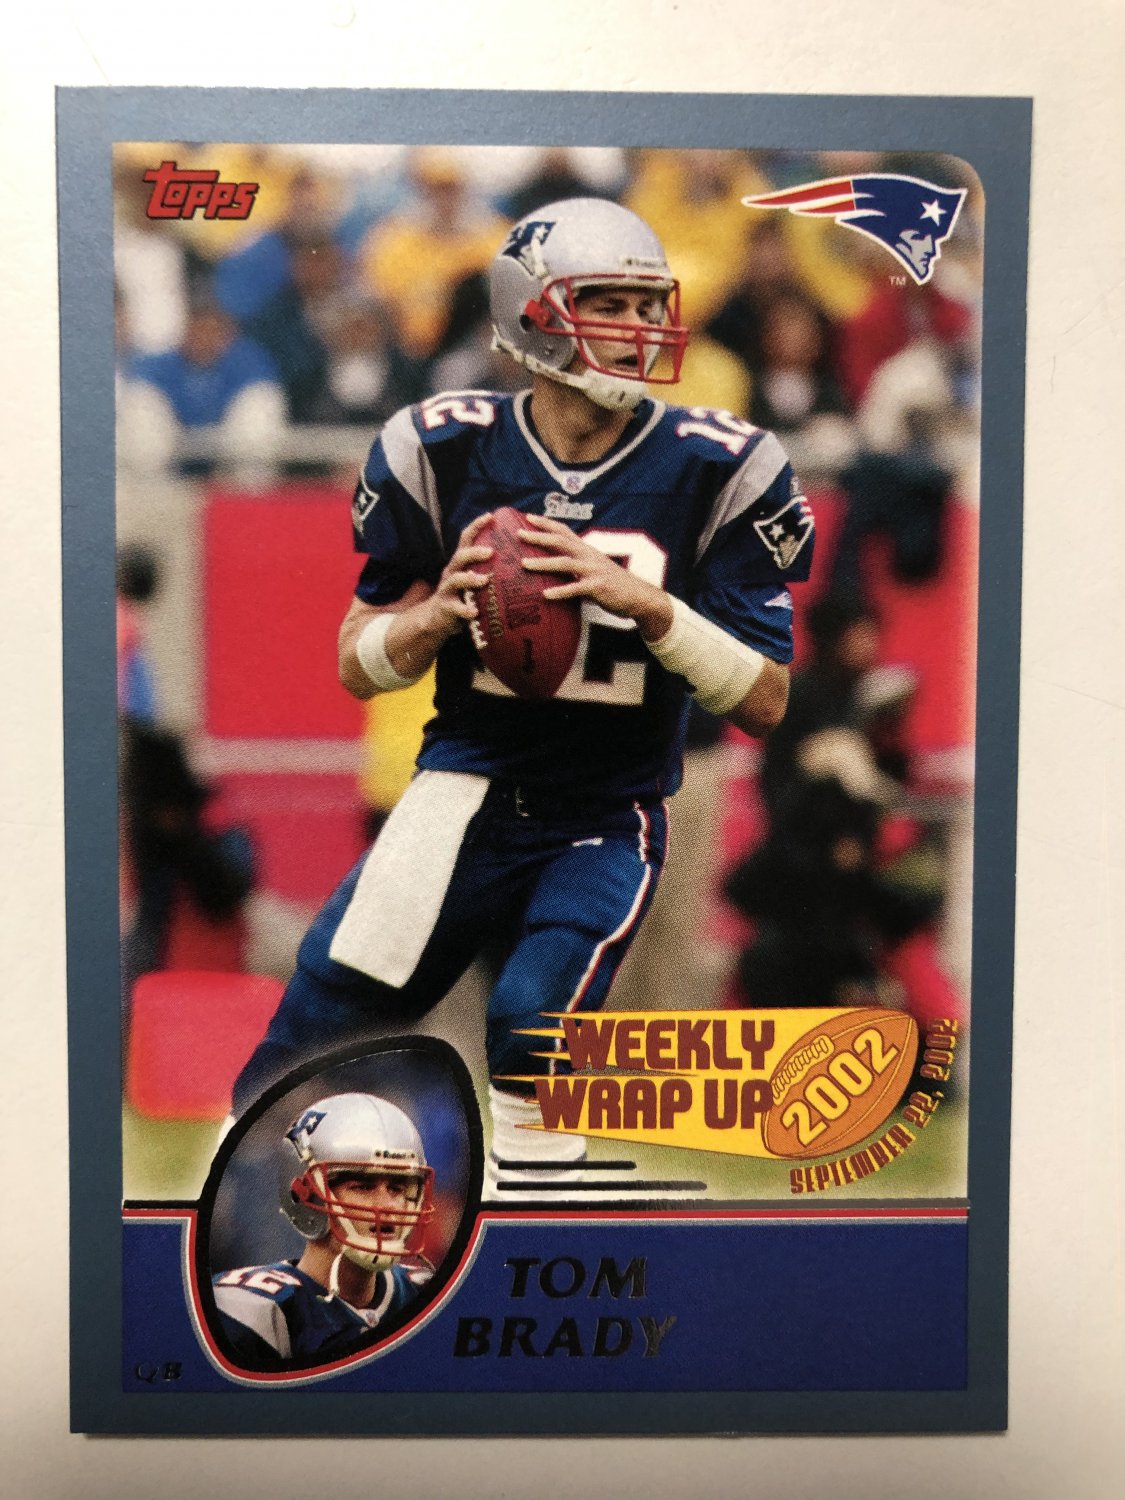 2003 Topps Football Card #293 Tom Brady